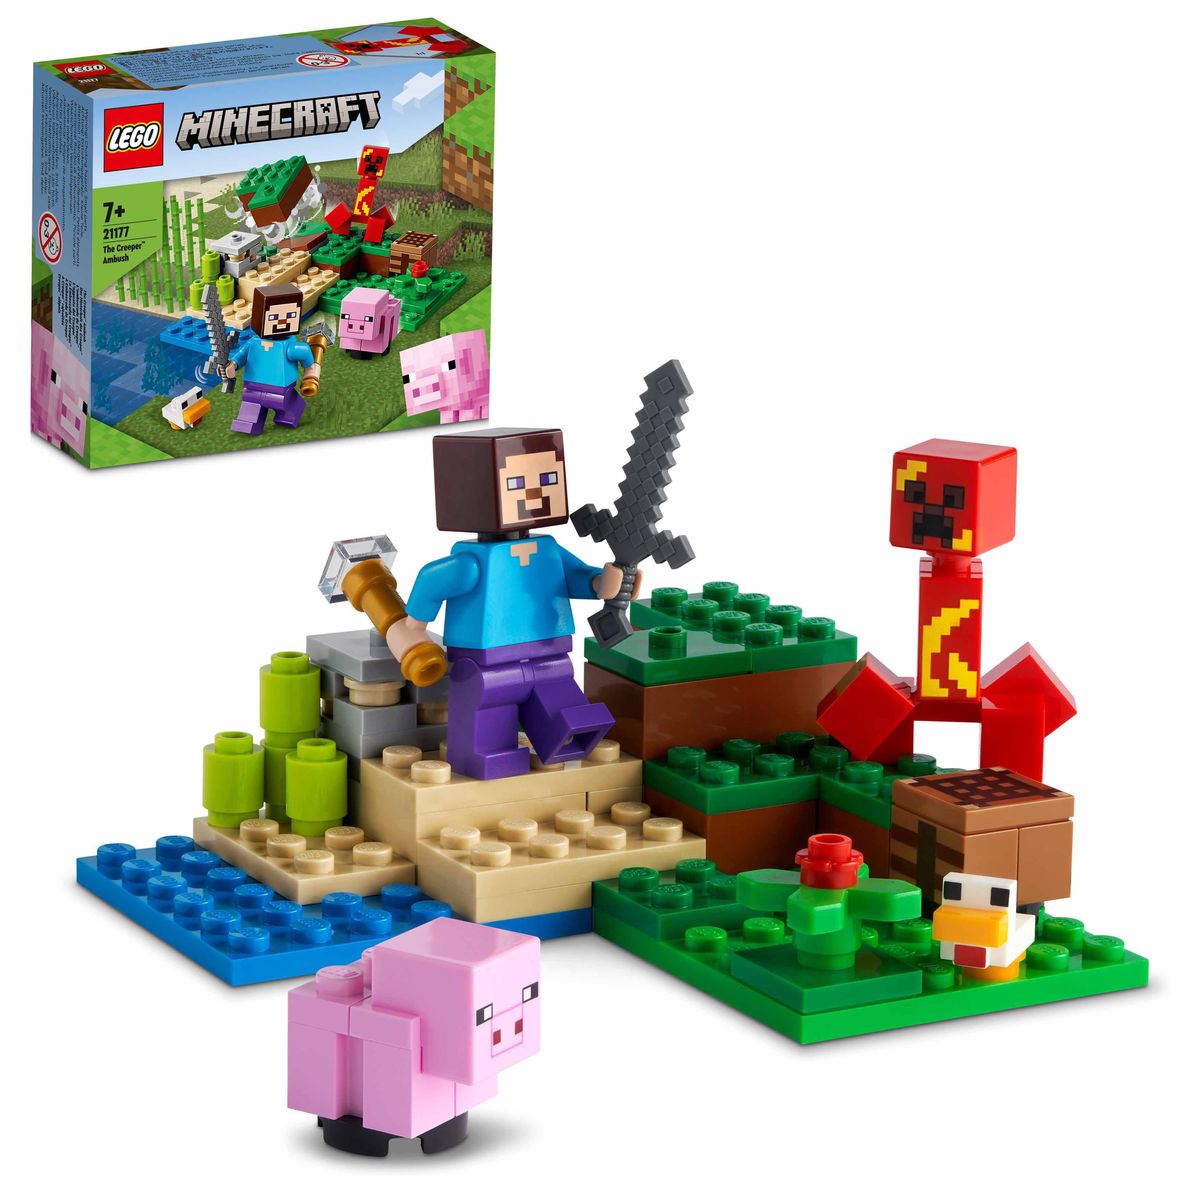 LEGO Minecraft 21177 Spielwaren Schweinchen-Figuren\' - Creeper, mit des Hinterhalt Der kaufen